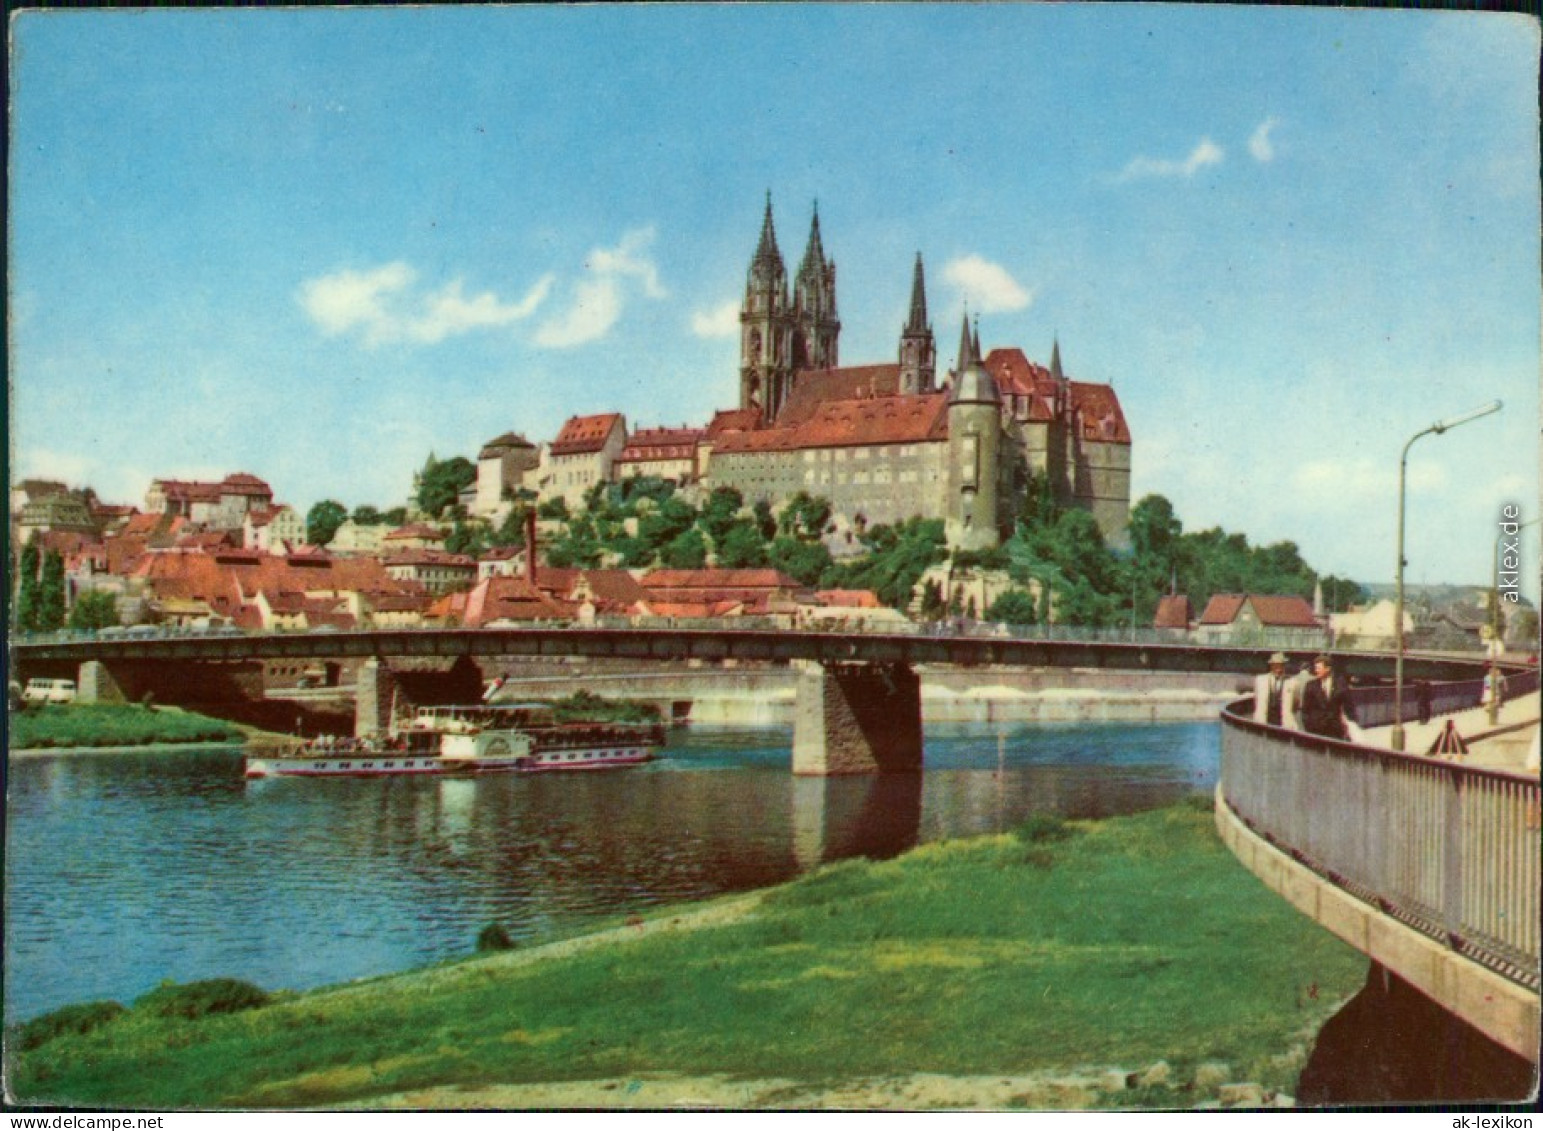 Ansichtskarte Meißen Schloss Albrechtsburg Und Dom 1964 - Meissen